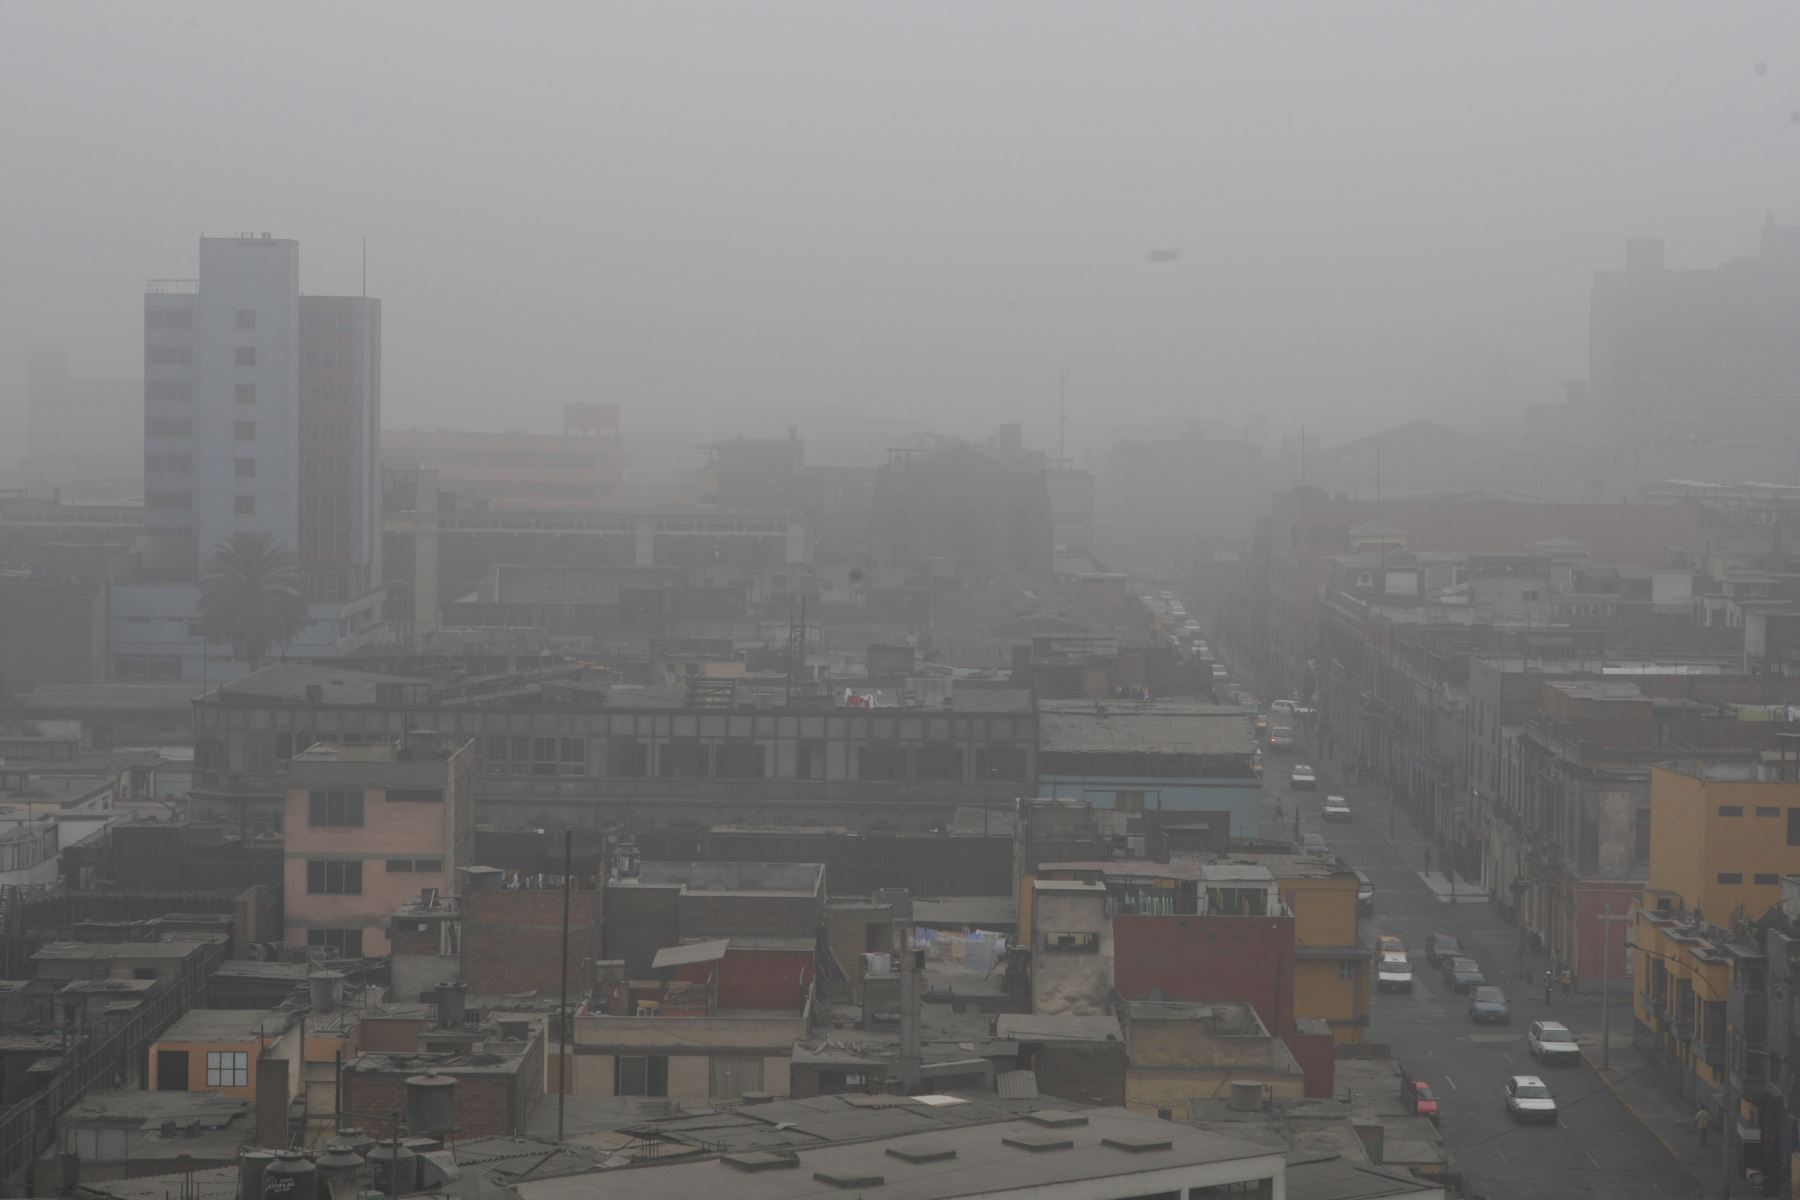 Senamhi: Lima y Callao registran 100% de humedad